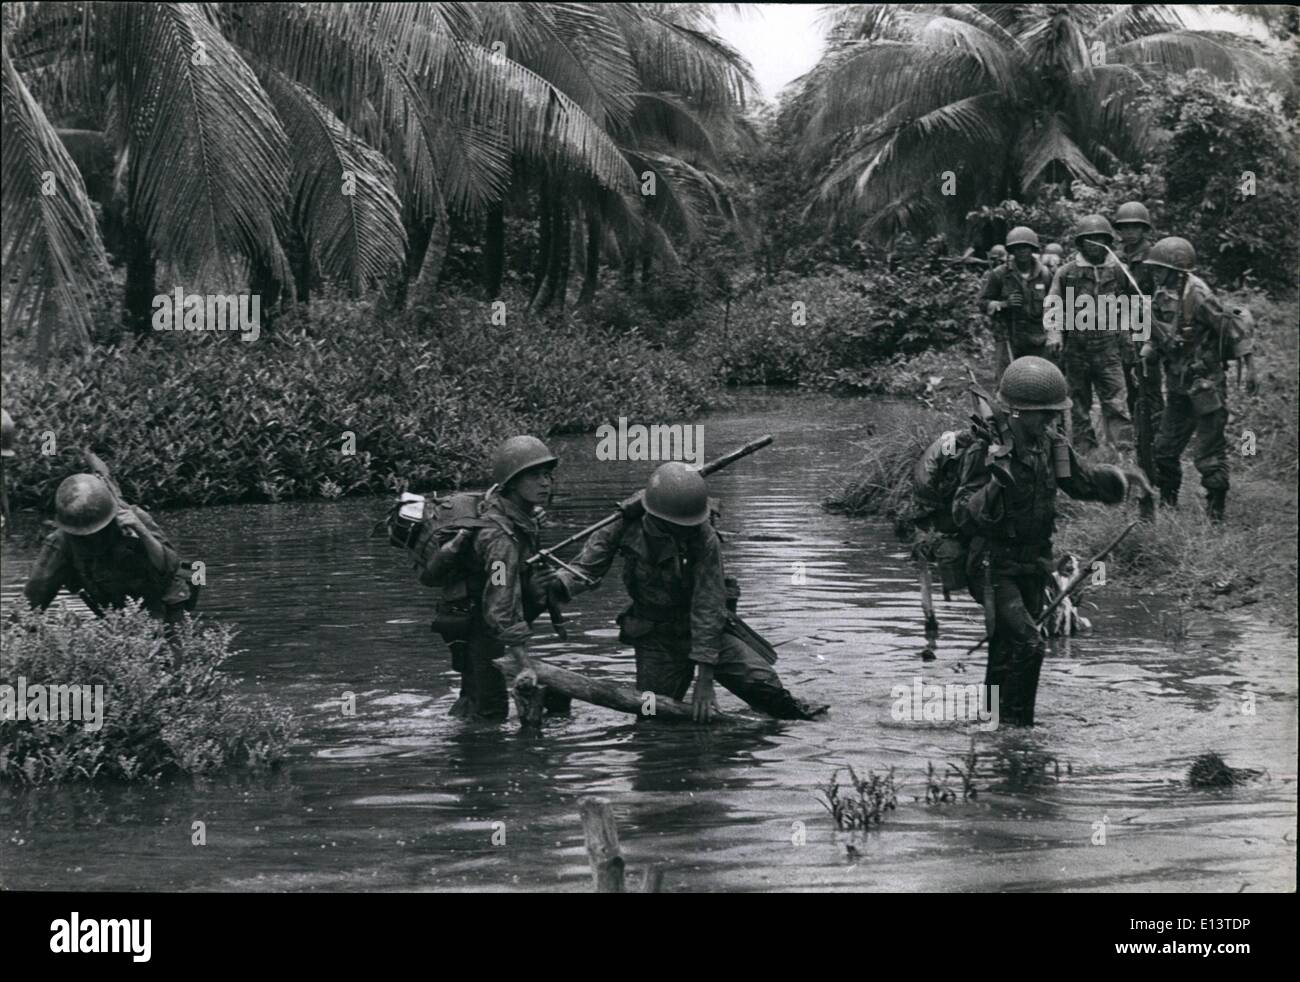 27 mar 2012 - soldati vietnamiti wade attraverso le paludi di mangrovie come cercano i Viet Cong posizioni nella penisola Hamau. Foto Stock